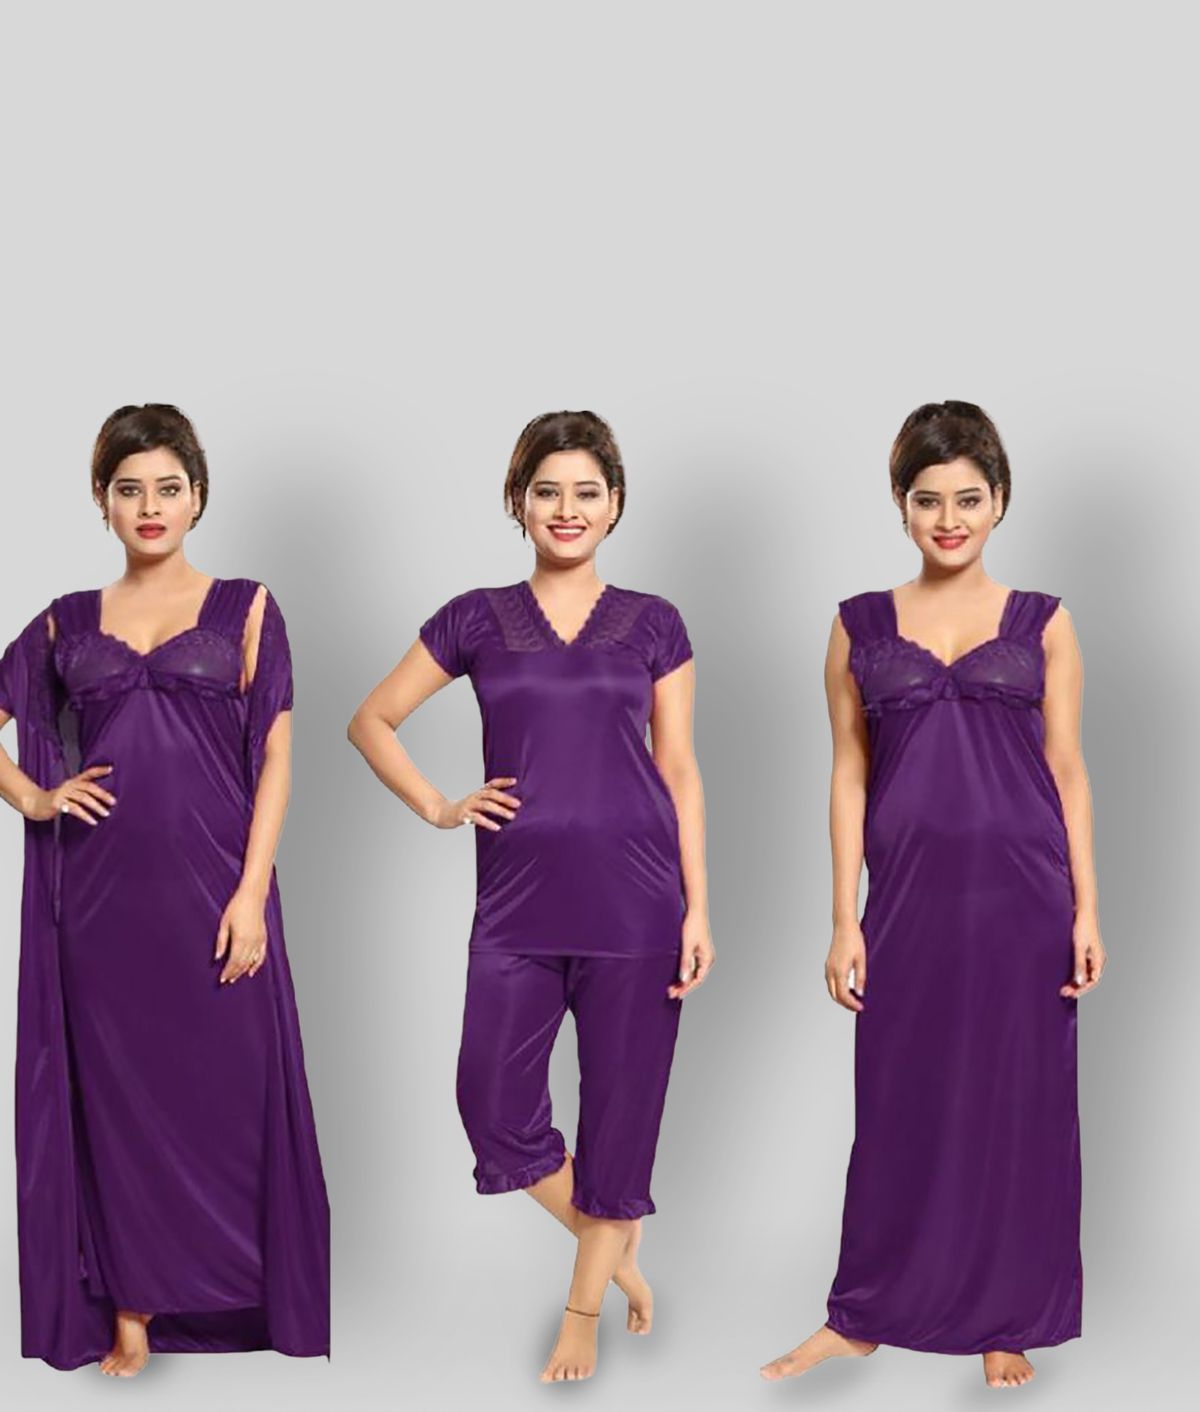     			Romaisa - Purple Satin Women's Nightwear Nighty & Night Gowns